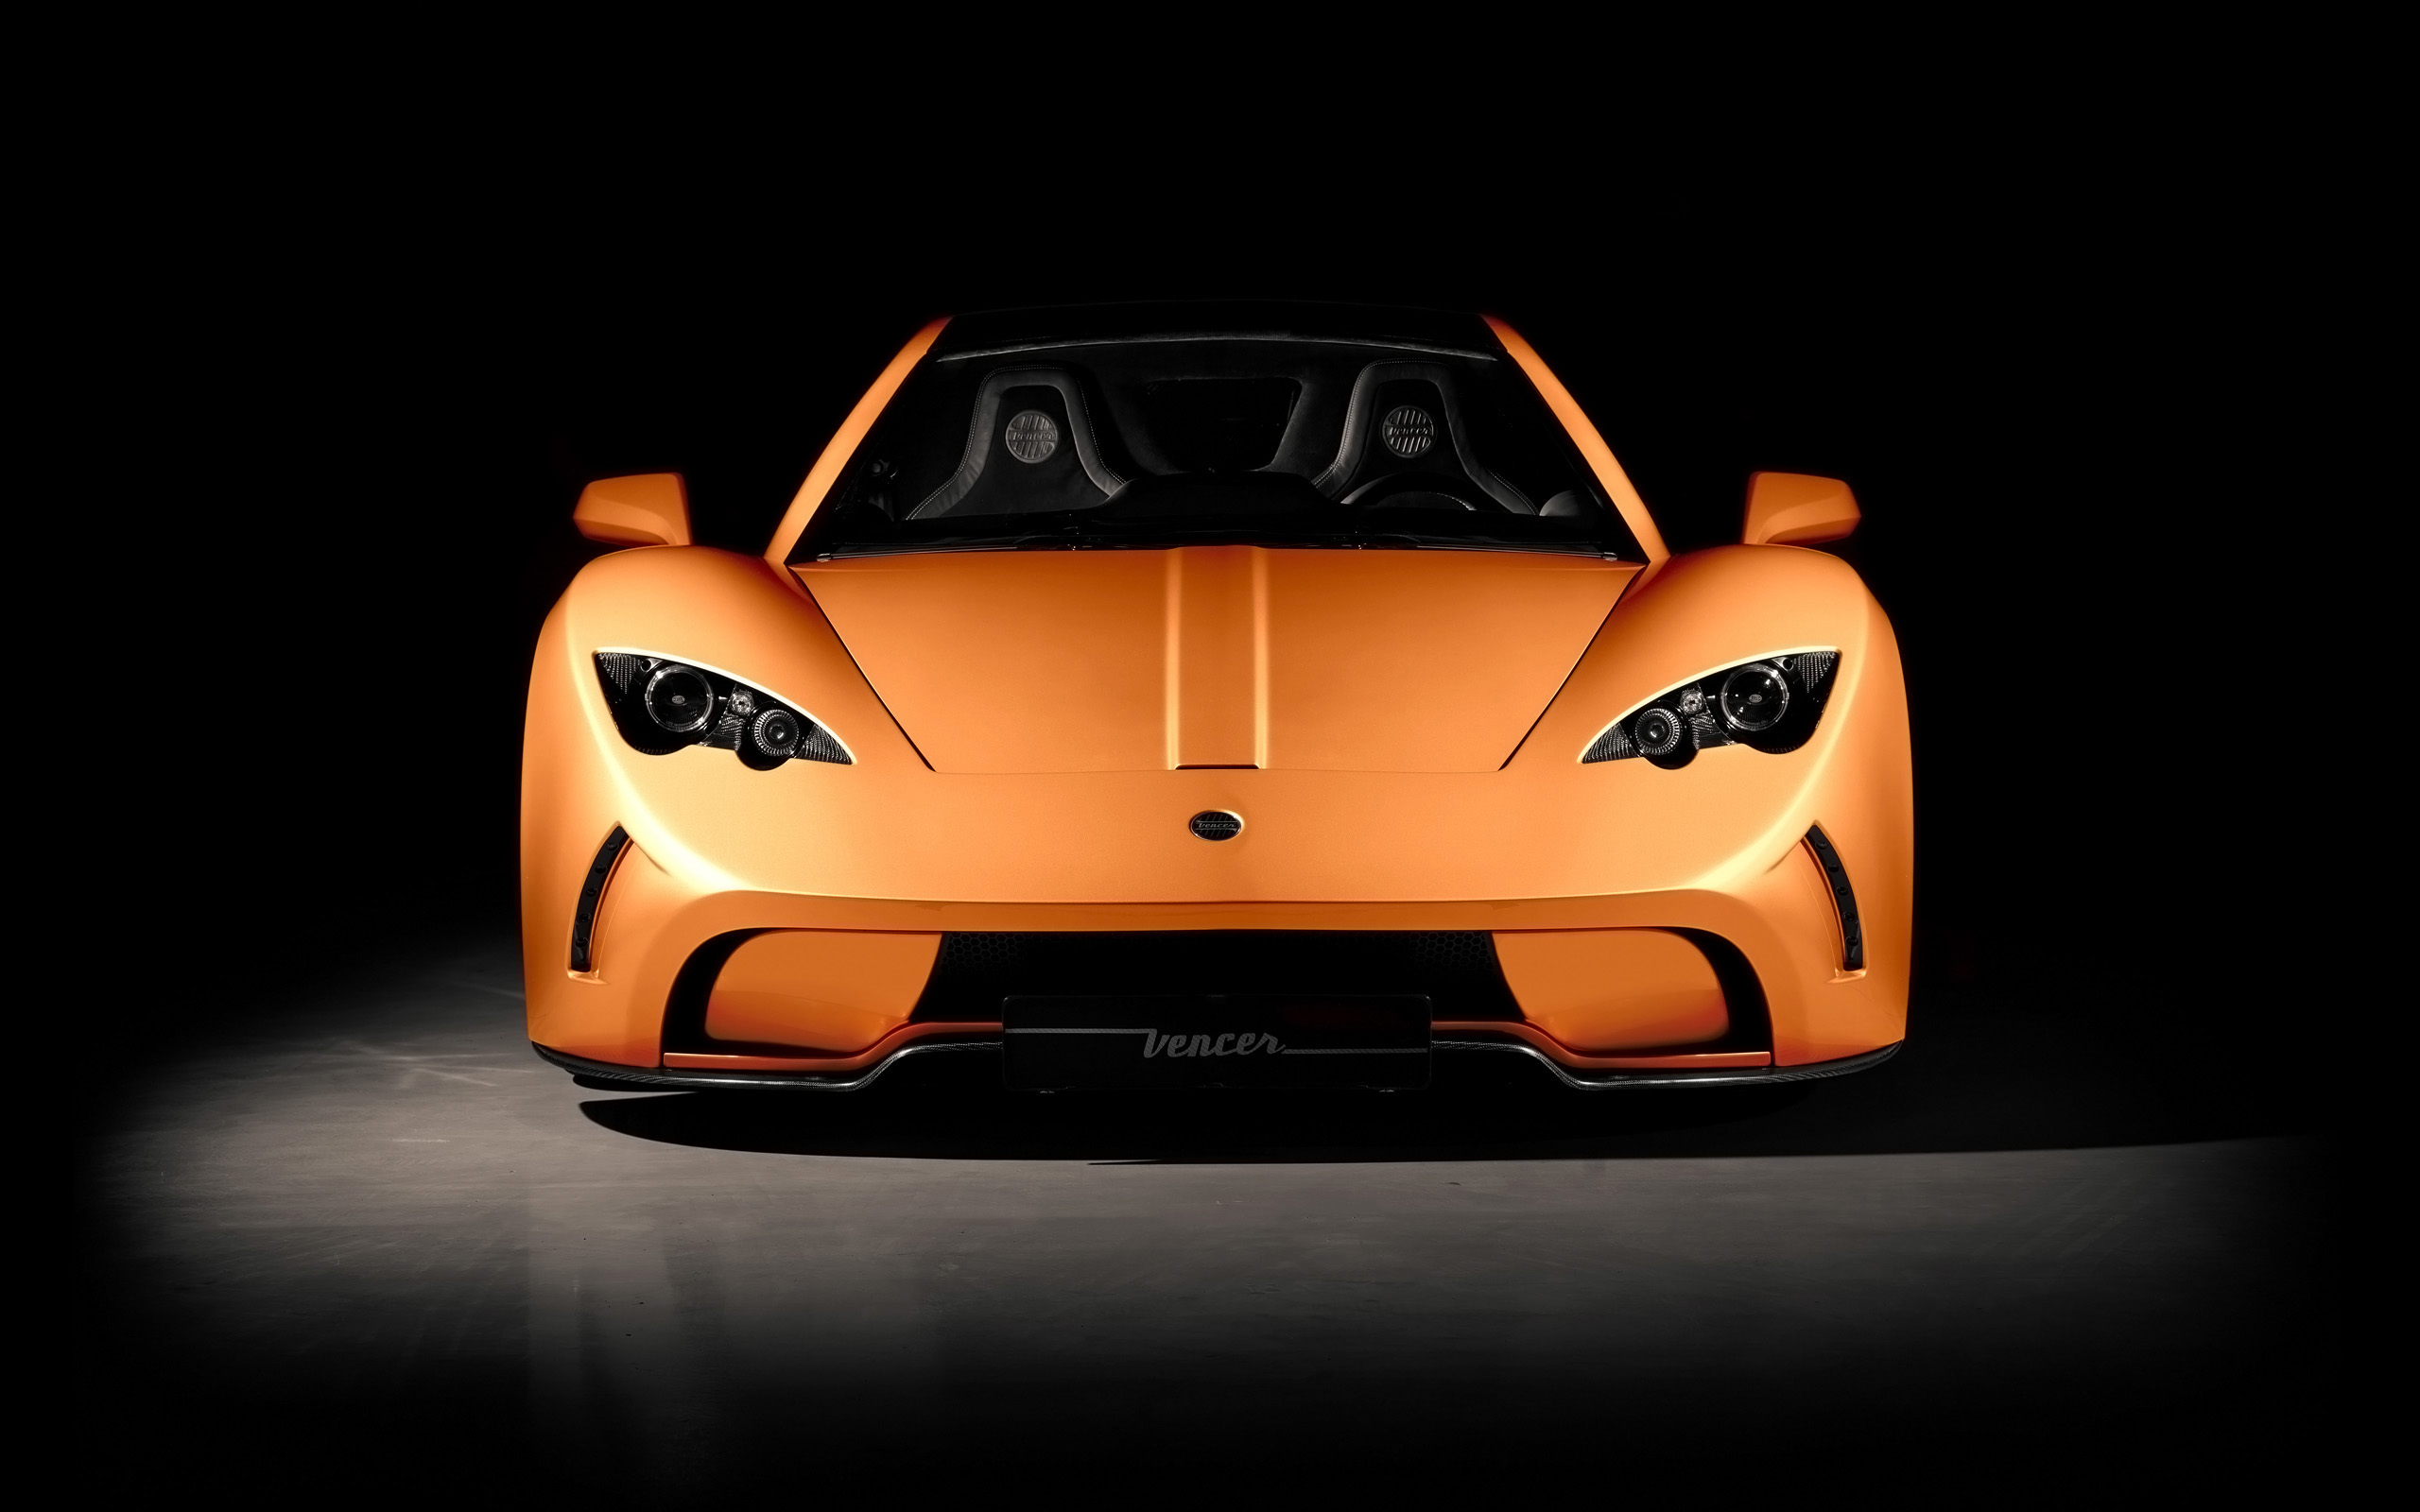 Free download wallpaper Car, Vehicles, Orange Car, Vencer Sarthe on your PC desktop